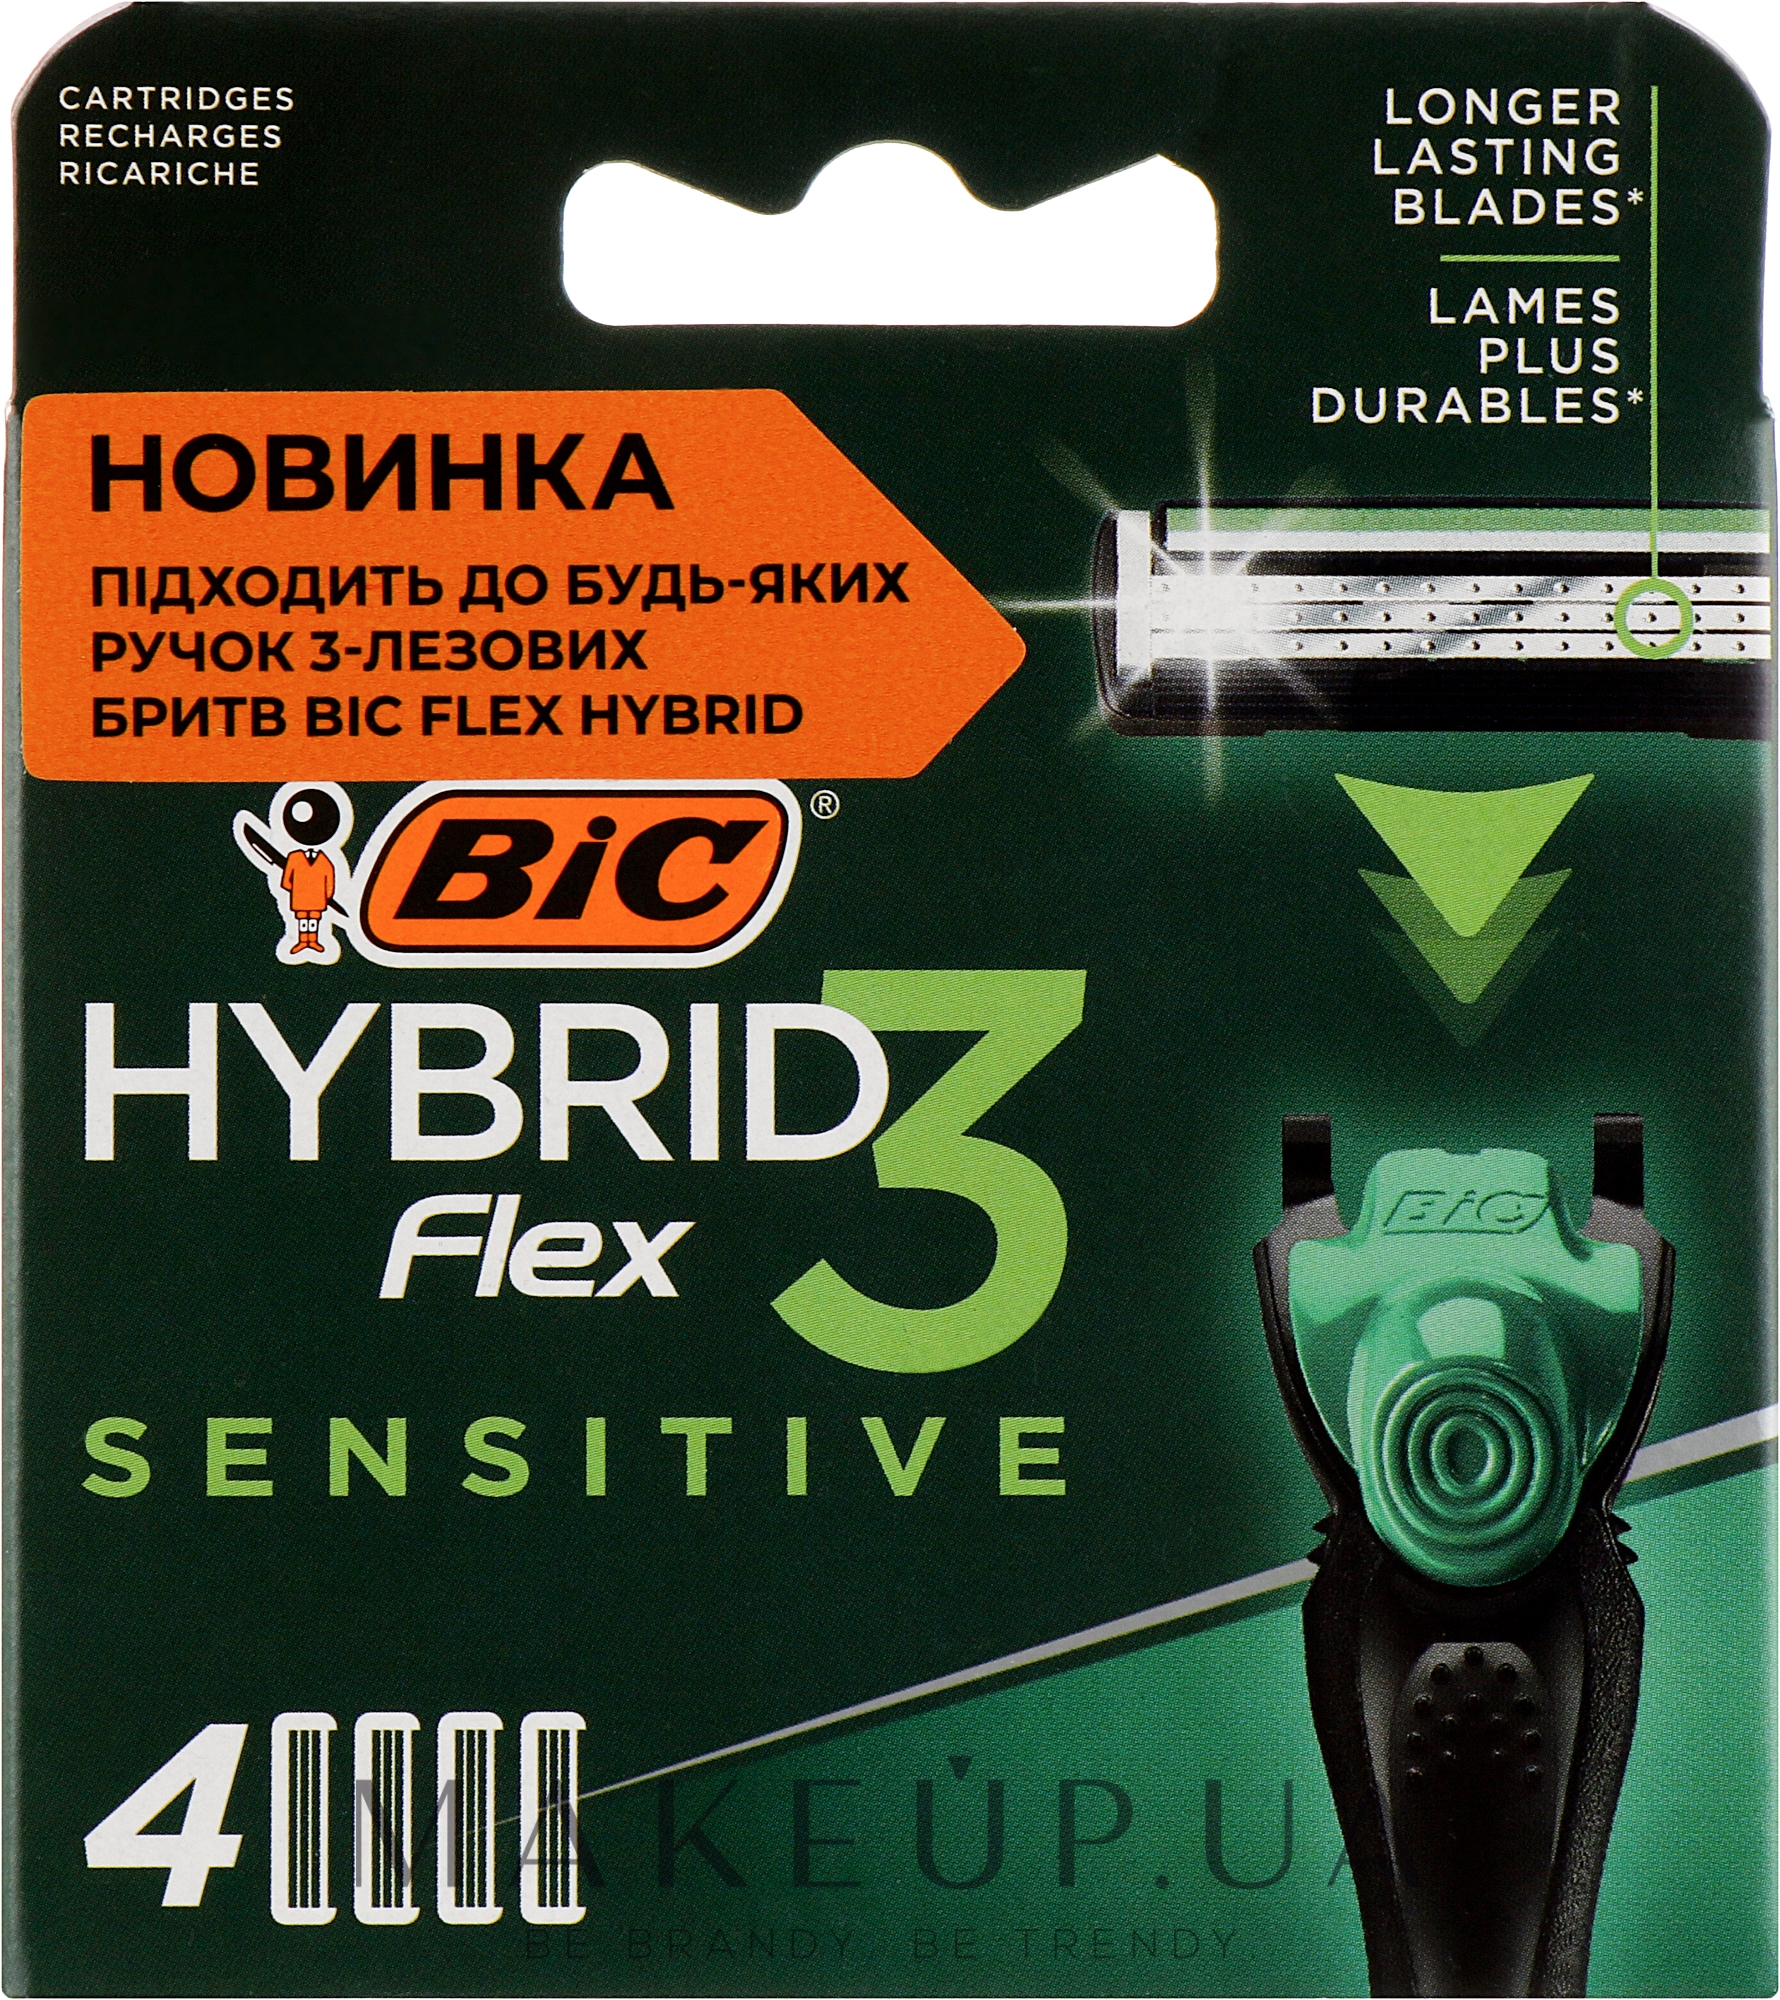 Сменные кассеты для бритья Flex 3 Hybrid Sensitive, 4шт - Bic — фото 4шт